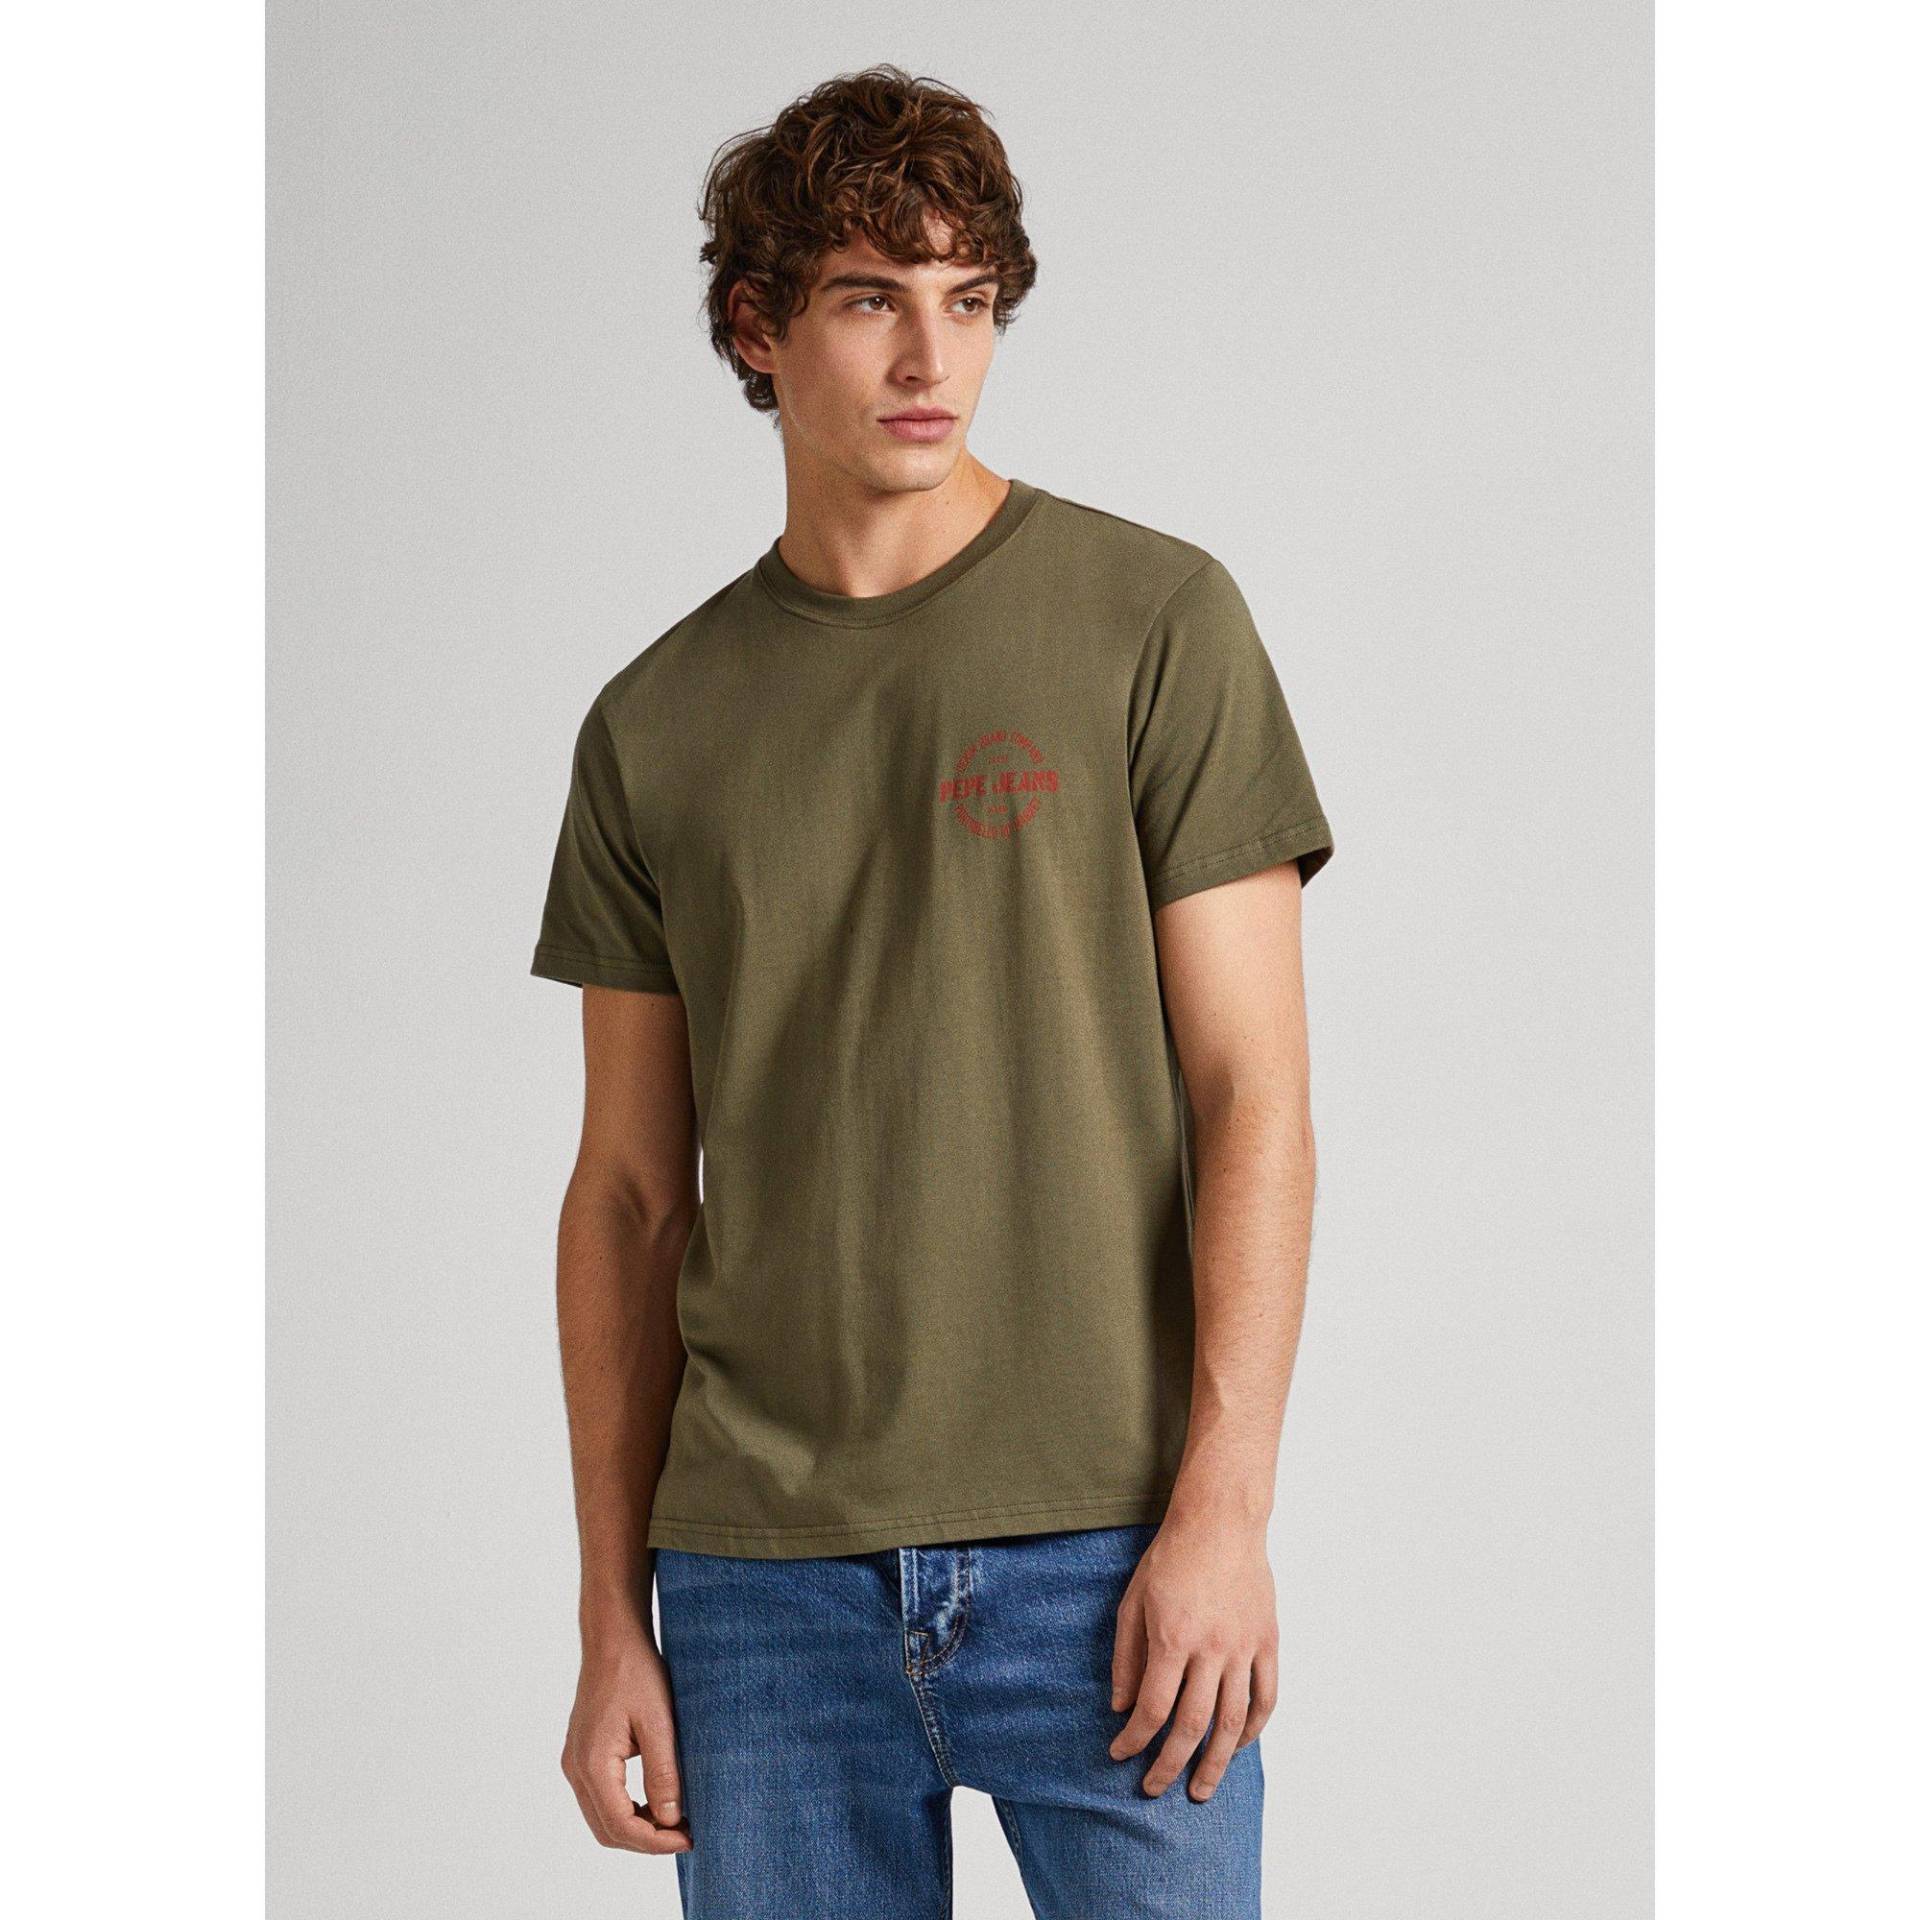 T-shirt Herren Militärgrün M von Pepe Jeans